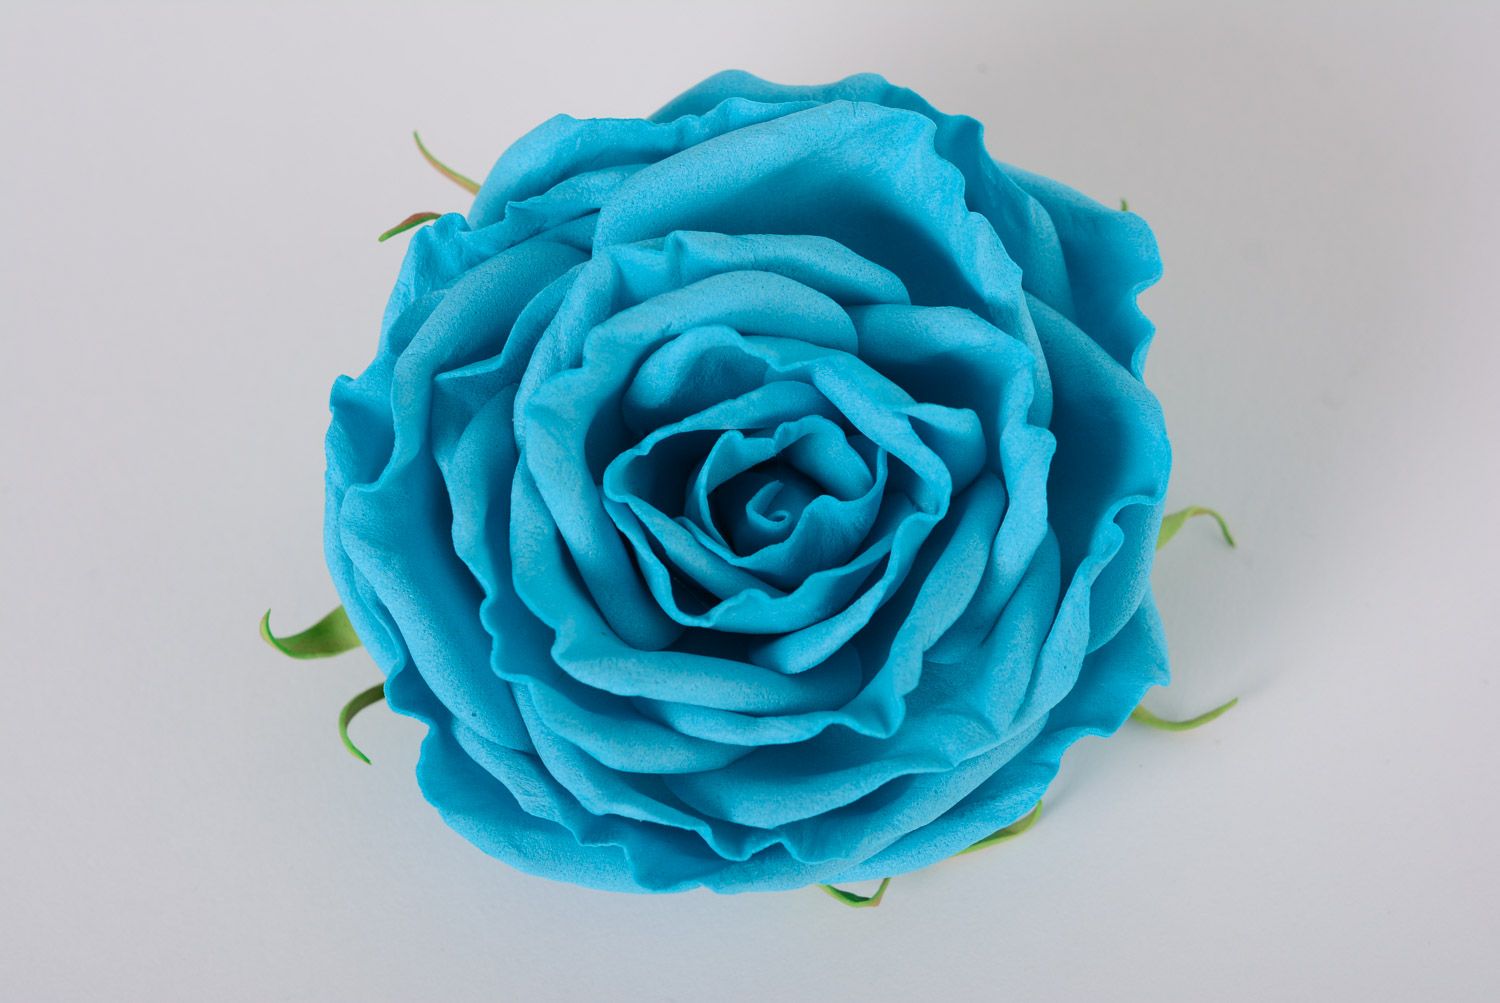 Яркая резинка для волос ручной работы с цветком из фоамирана ручной работы голубая фото 1